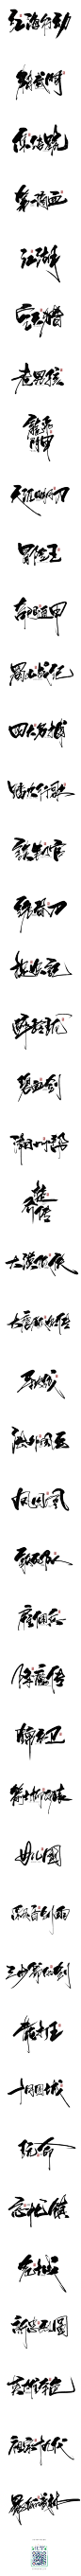 数位板书写字体-字体传奇网-中国首个字体品牌设计师交流网